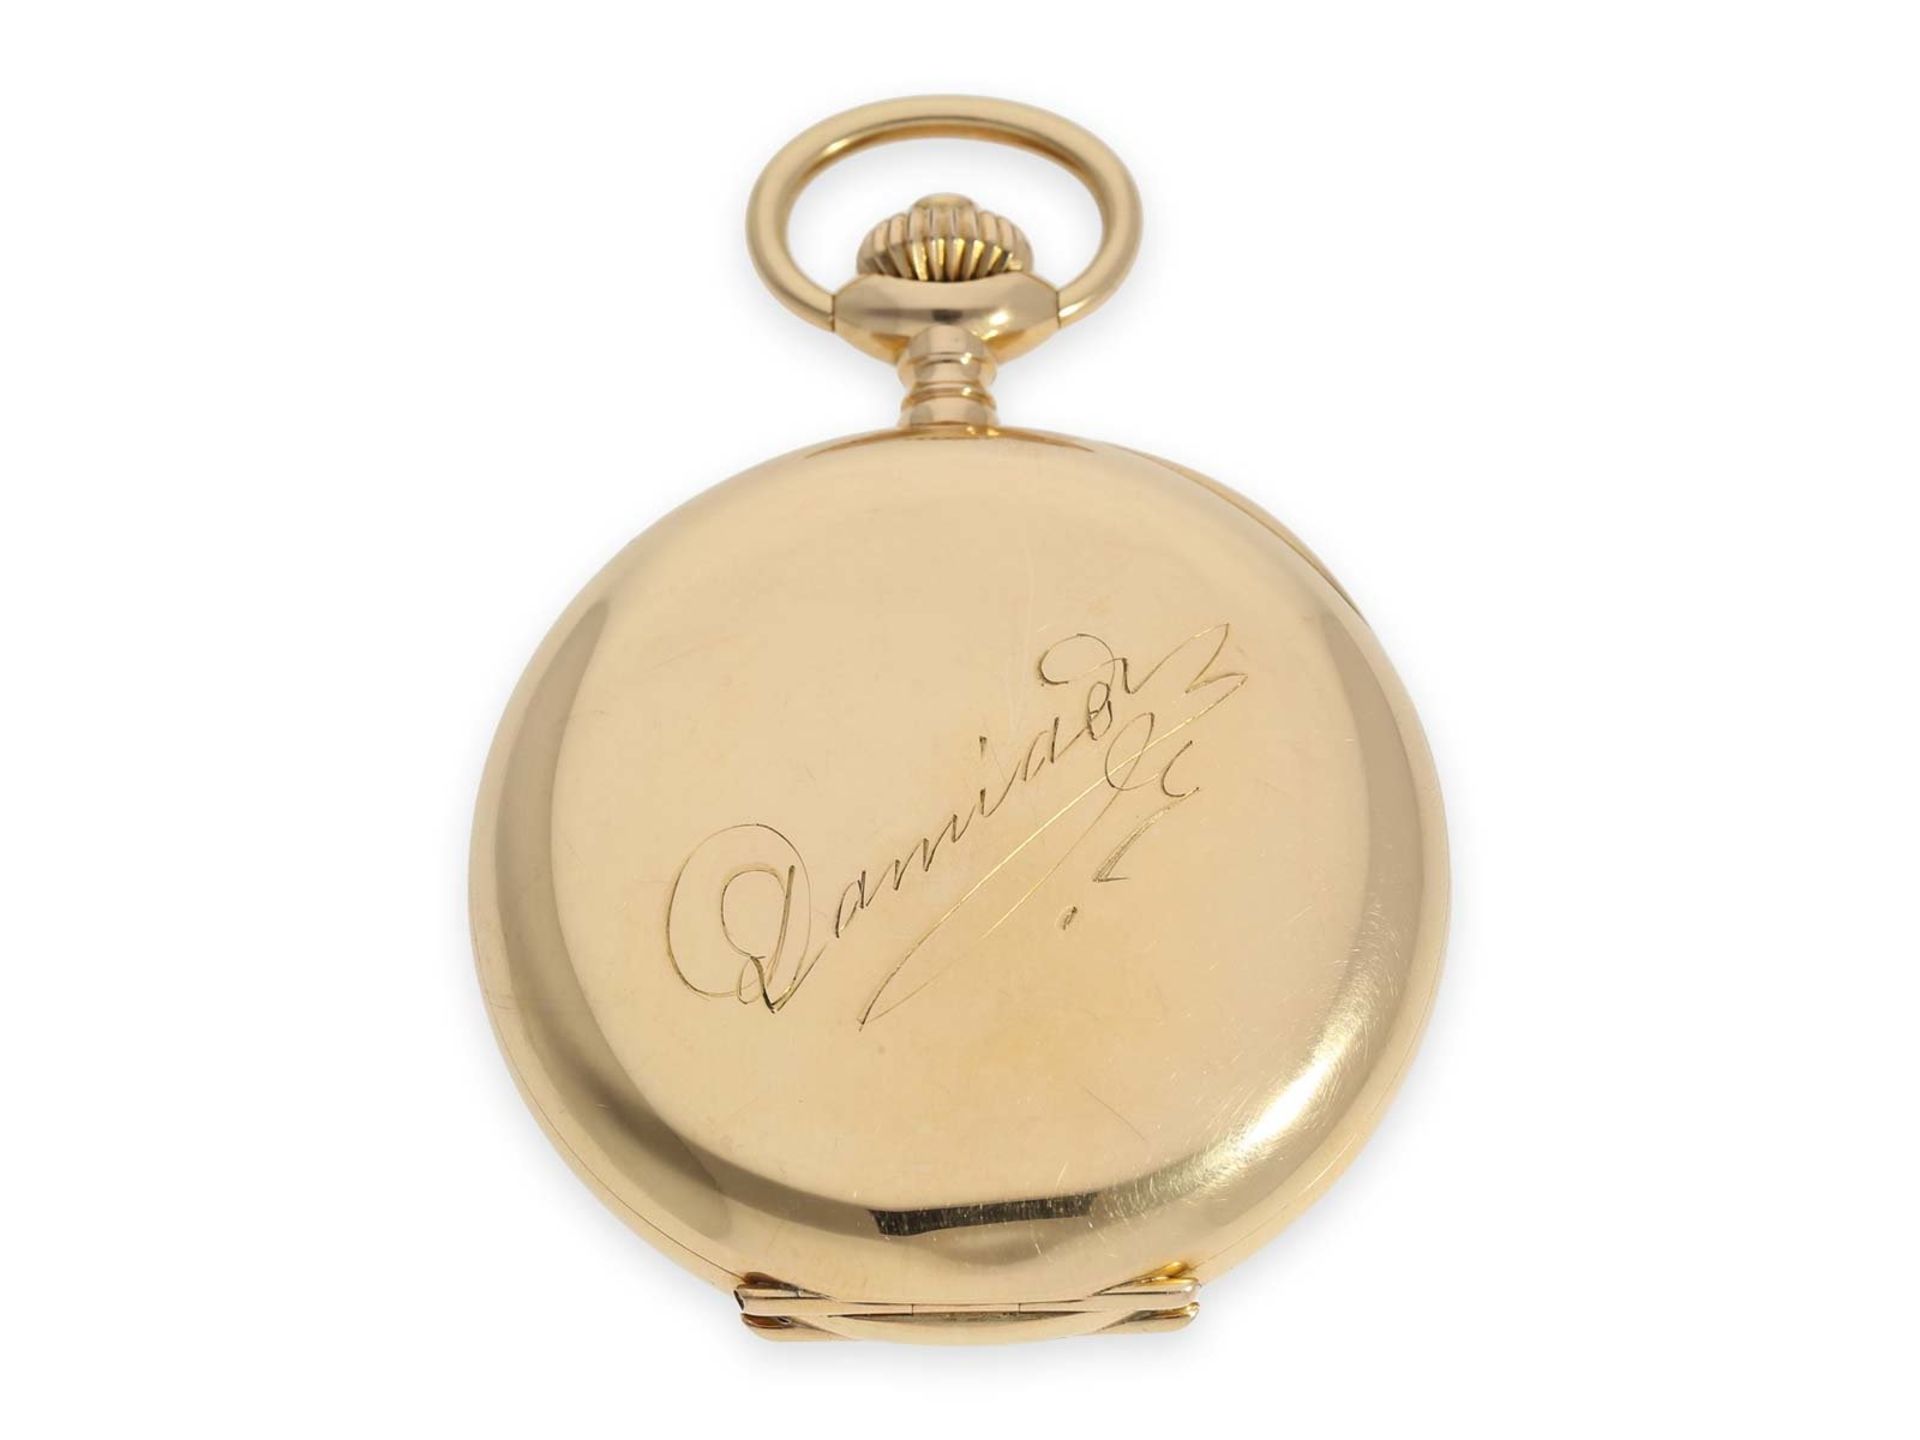 Taschenuhr: sehr schweres Genfer Ankerchronometer besonderer Qualität, "Chronometre Du Bois" Rio - Bild 3 aus 7